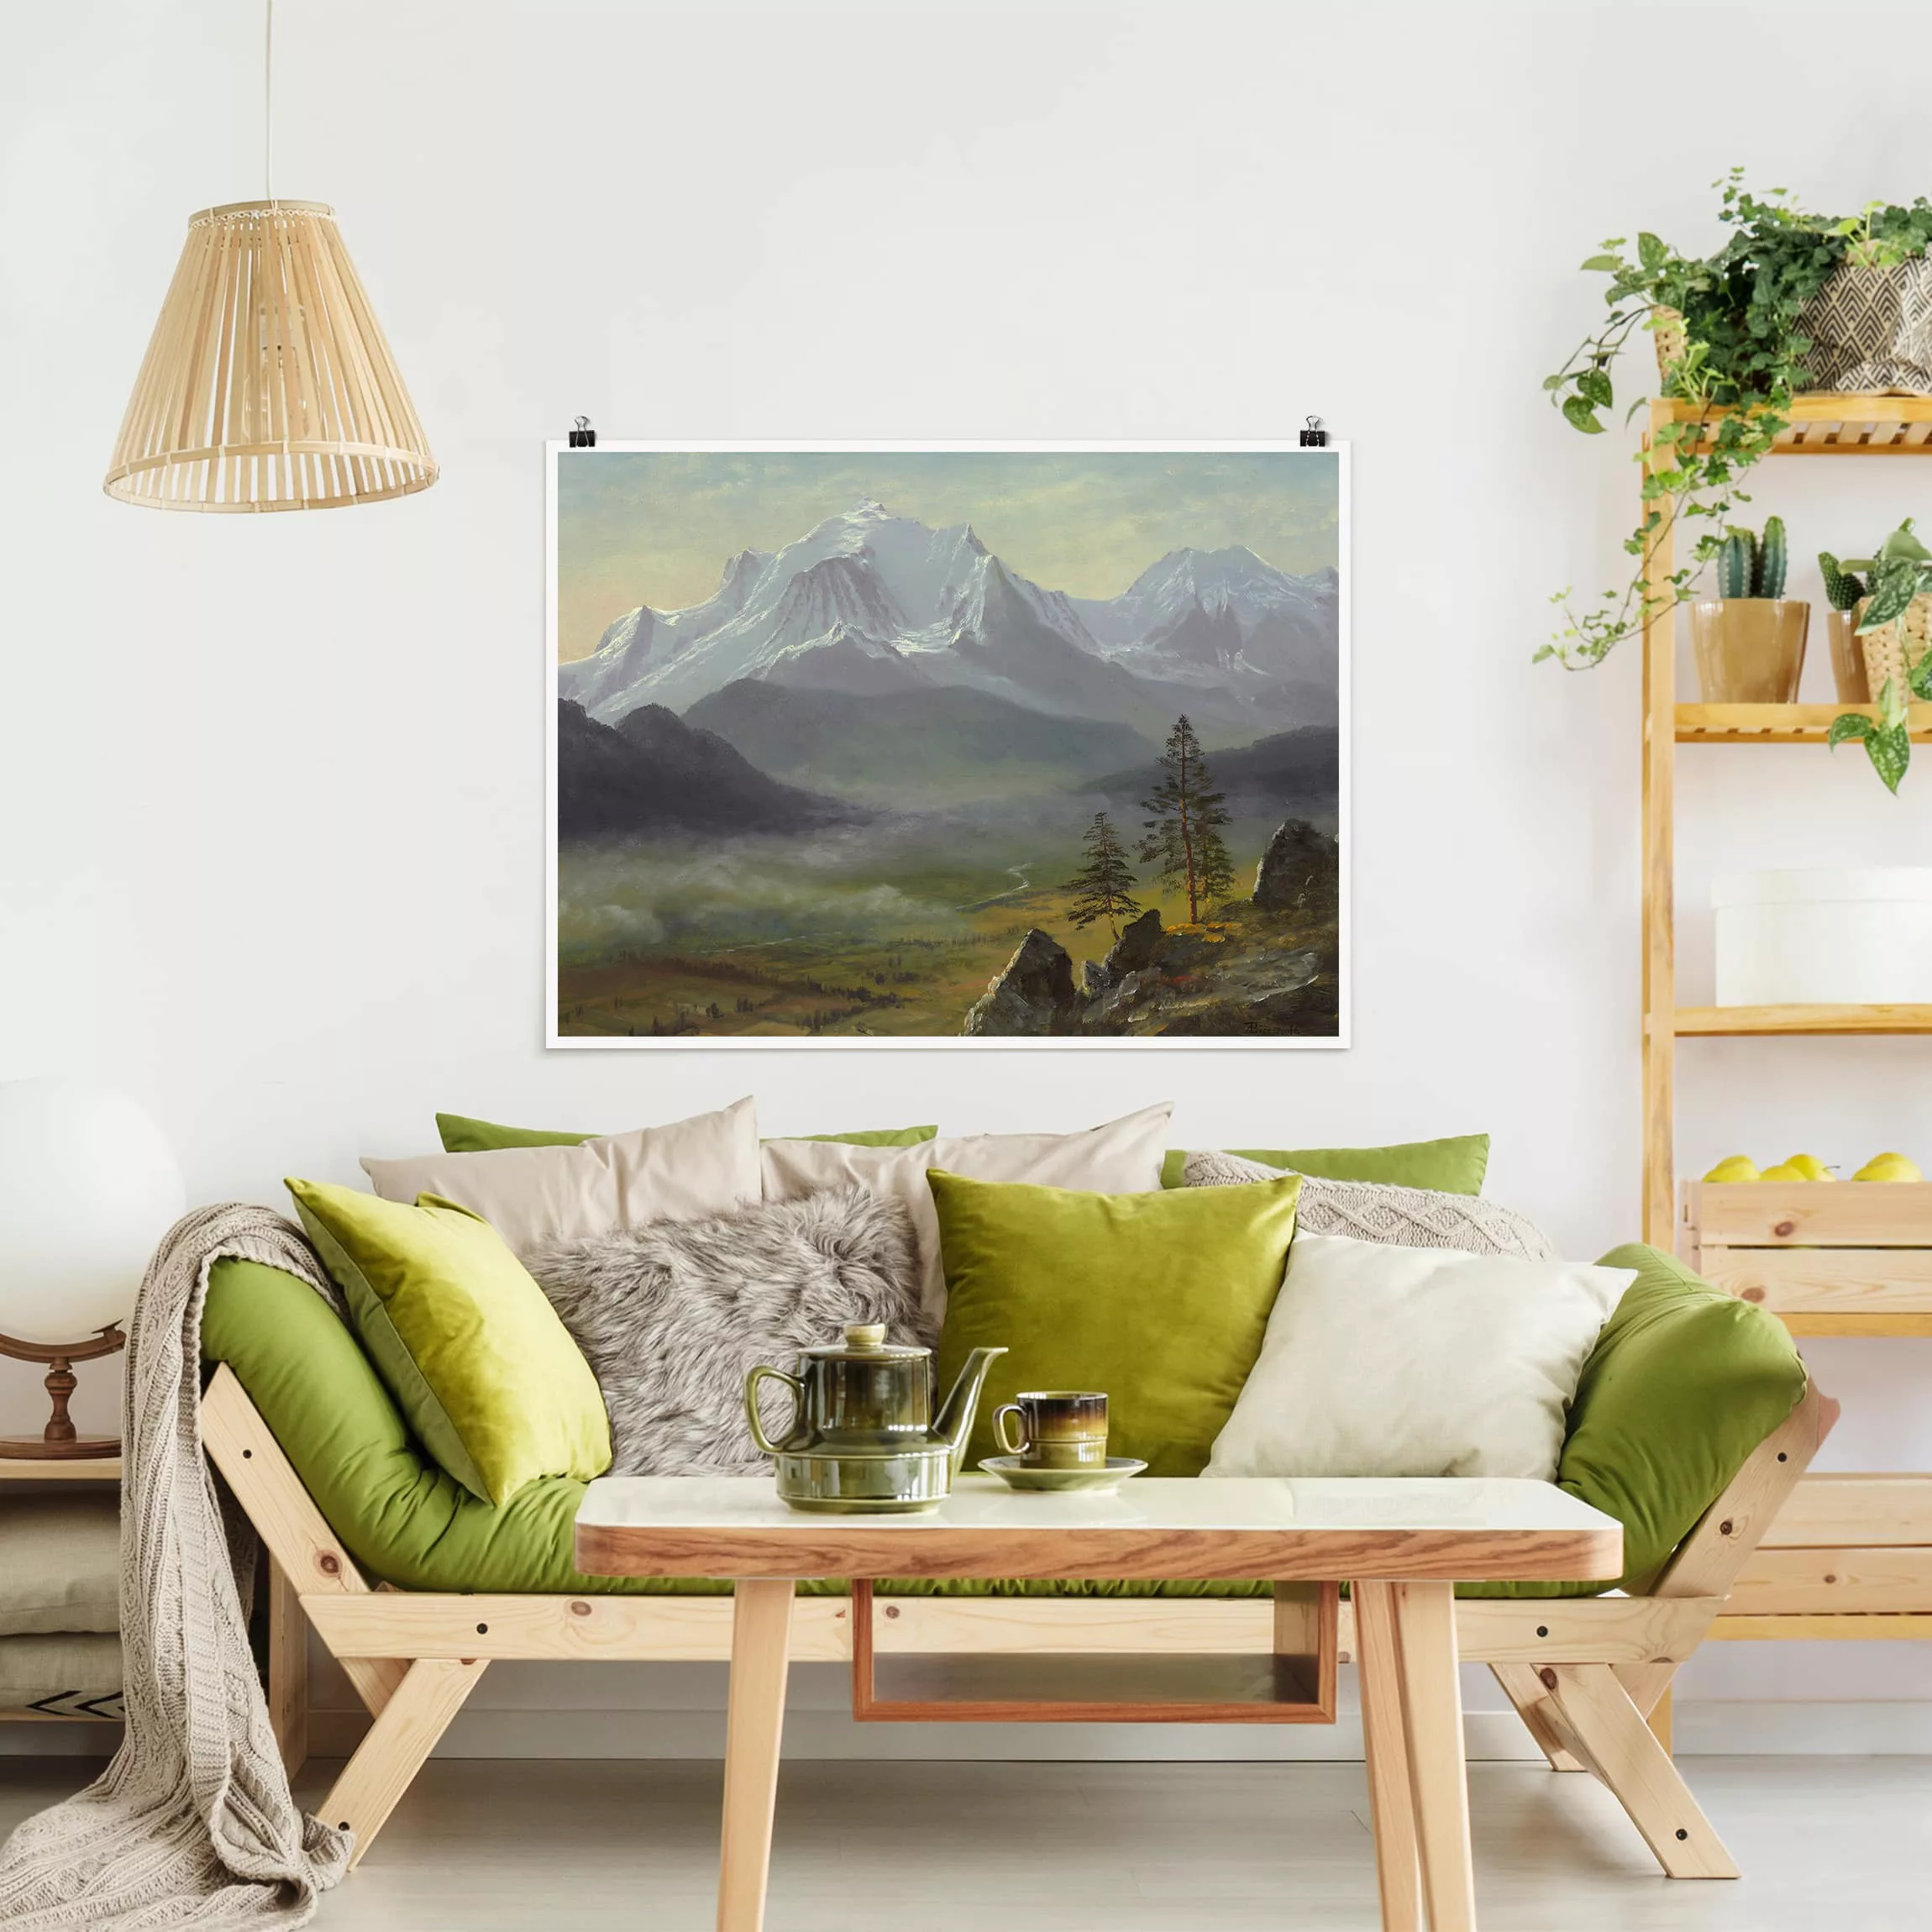 Poster Kunstdruck - Querformat Albert Bierstadt - Mont Blanc günstig online kaufen